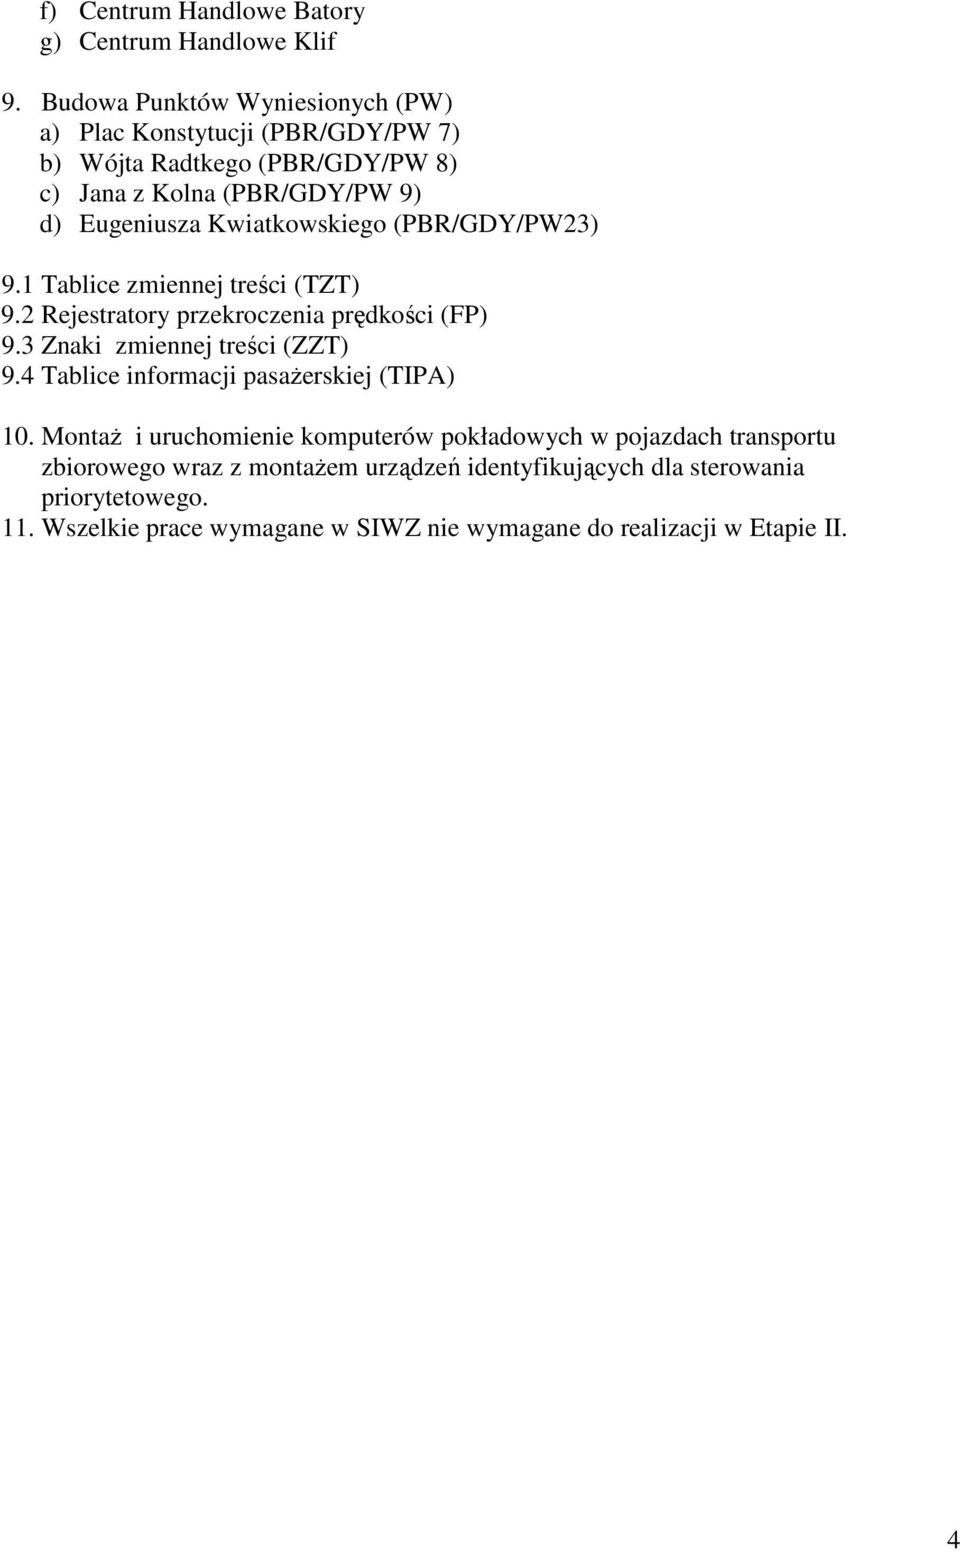 Kwiatkowskiego (PBR/GDY/PW23) 9.1 Tablice zmiennej treści (TZT) 9.2 Rejestratory przekroczenia prędkości (FP) 9.3 Znaki zmiennej treści (ZZT) 9.